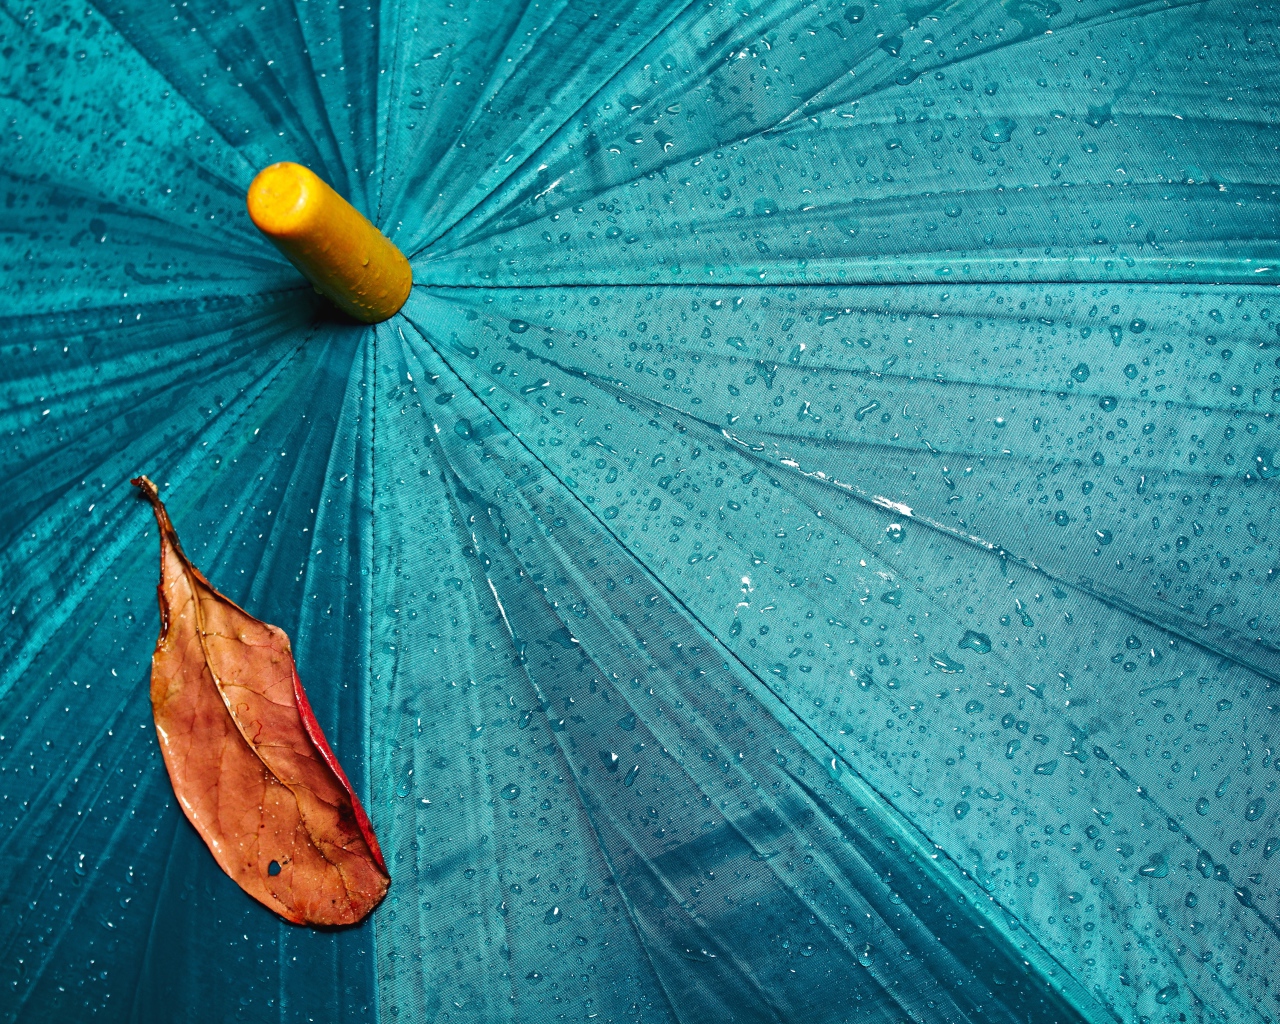 A yellow leaf lies on a blue wet umbrella